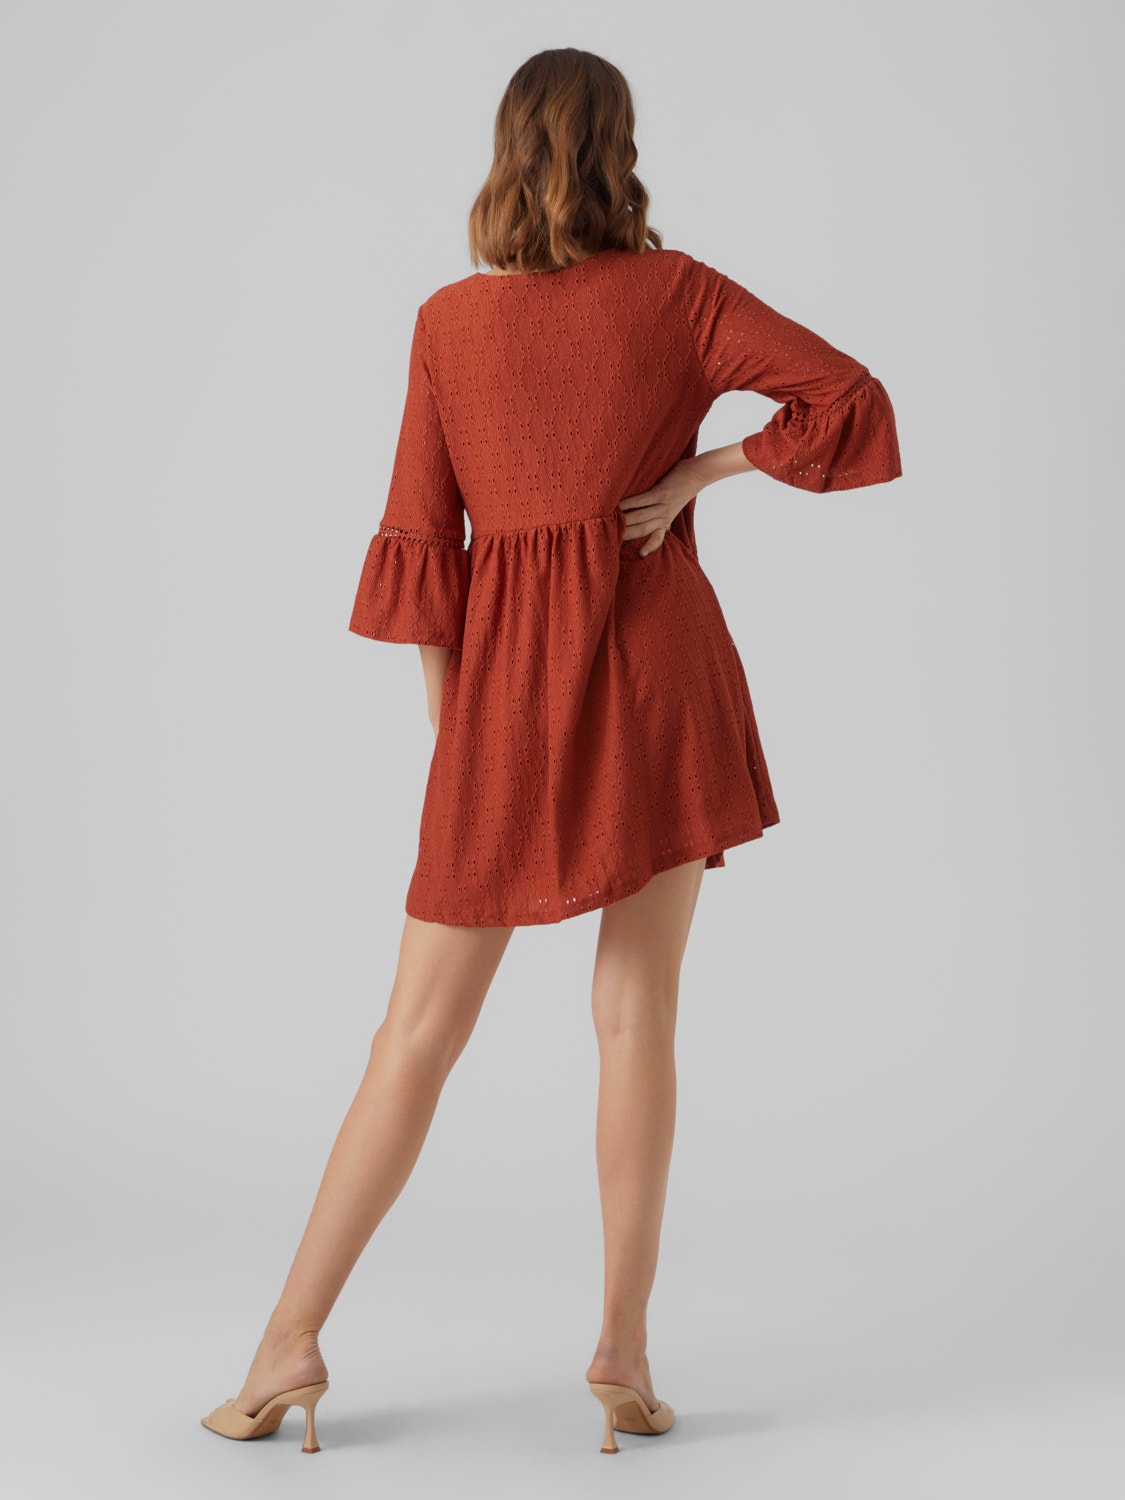 Vero Moda VMMARCY Short dress -Barn Red - 10291995